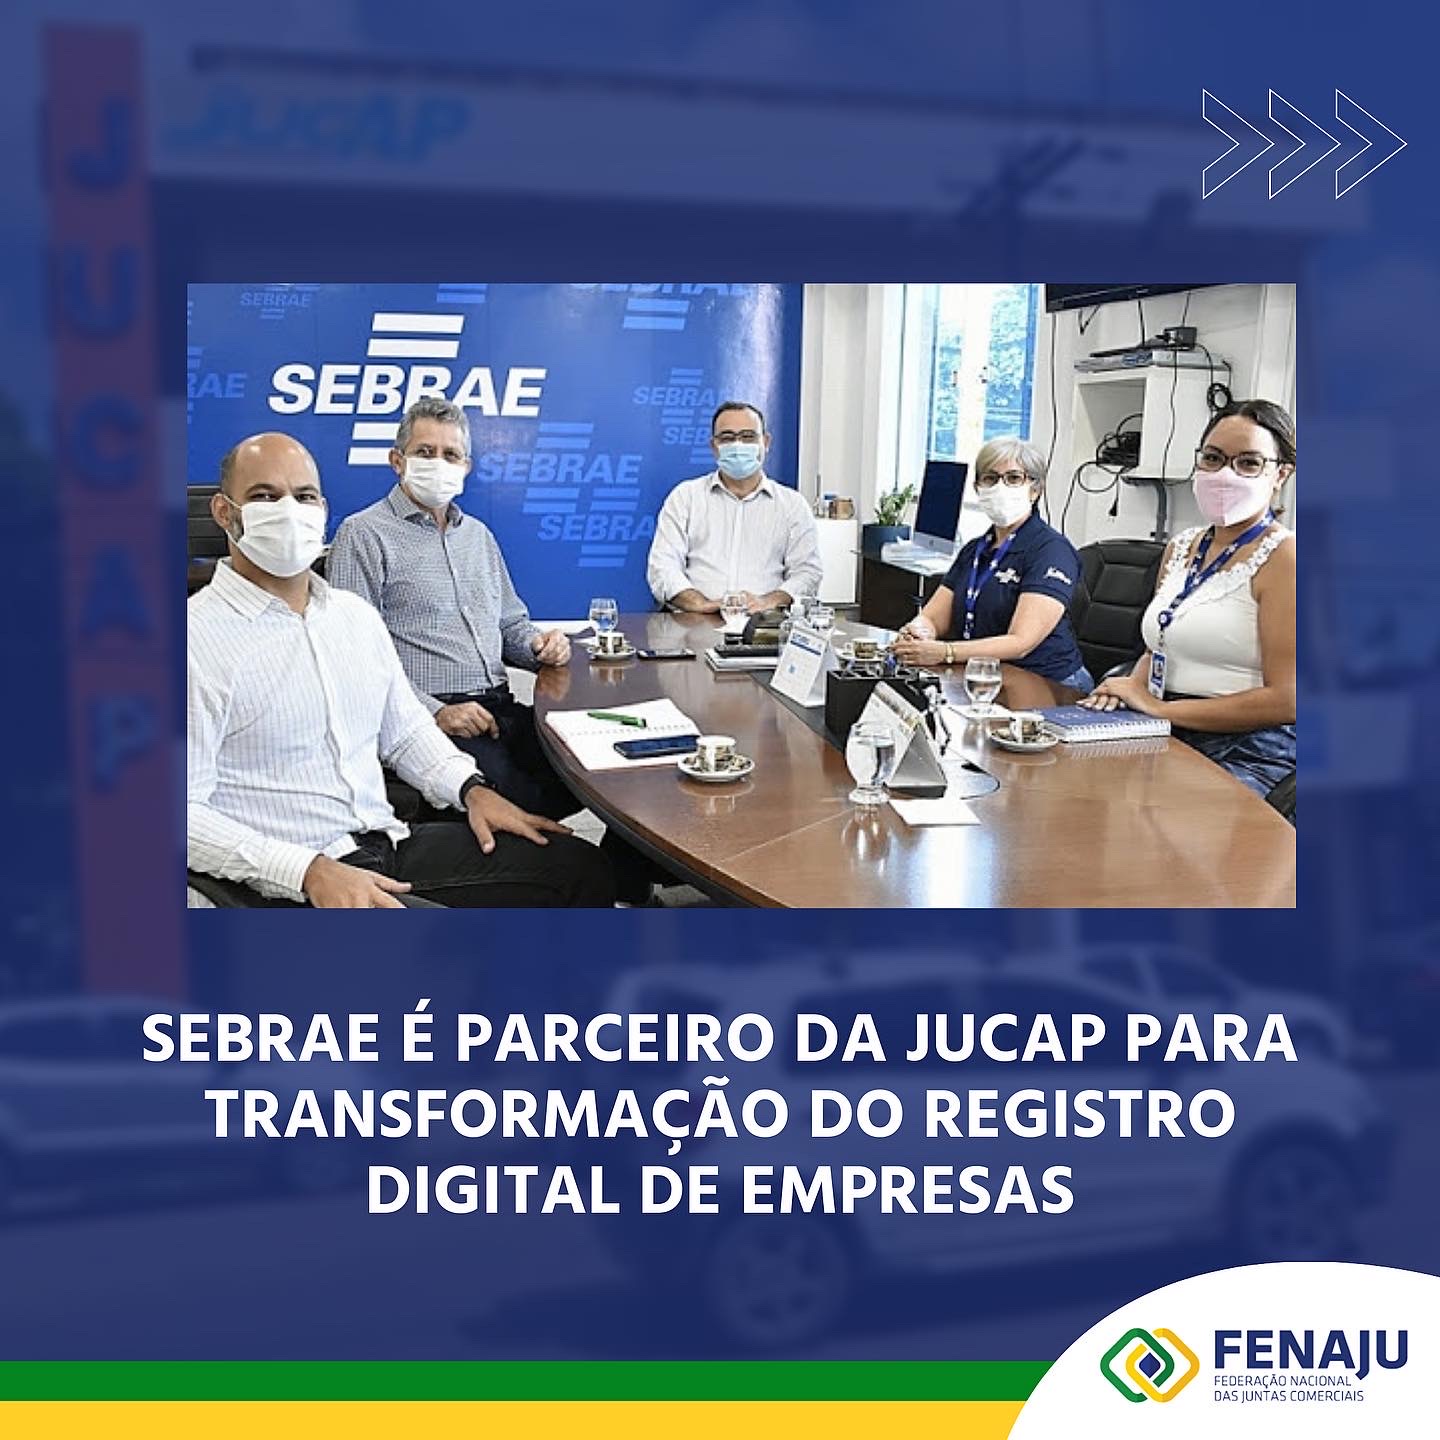 You are currently viewing Sebrae é parceiro da Jucap para transformação do registro digital de empresas